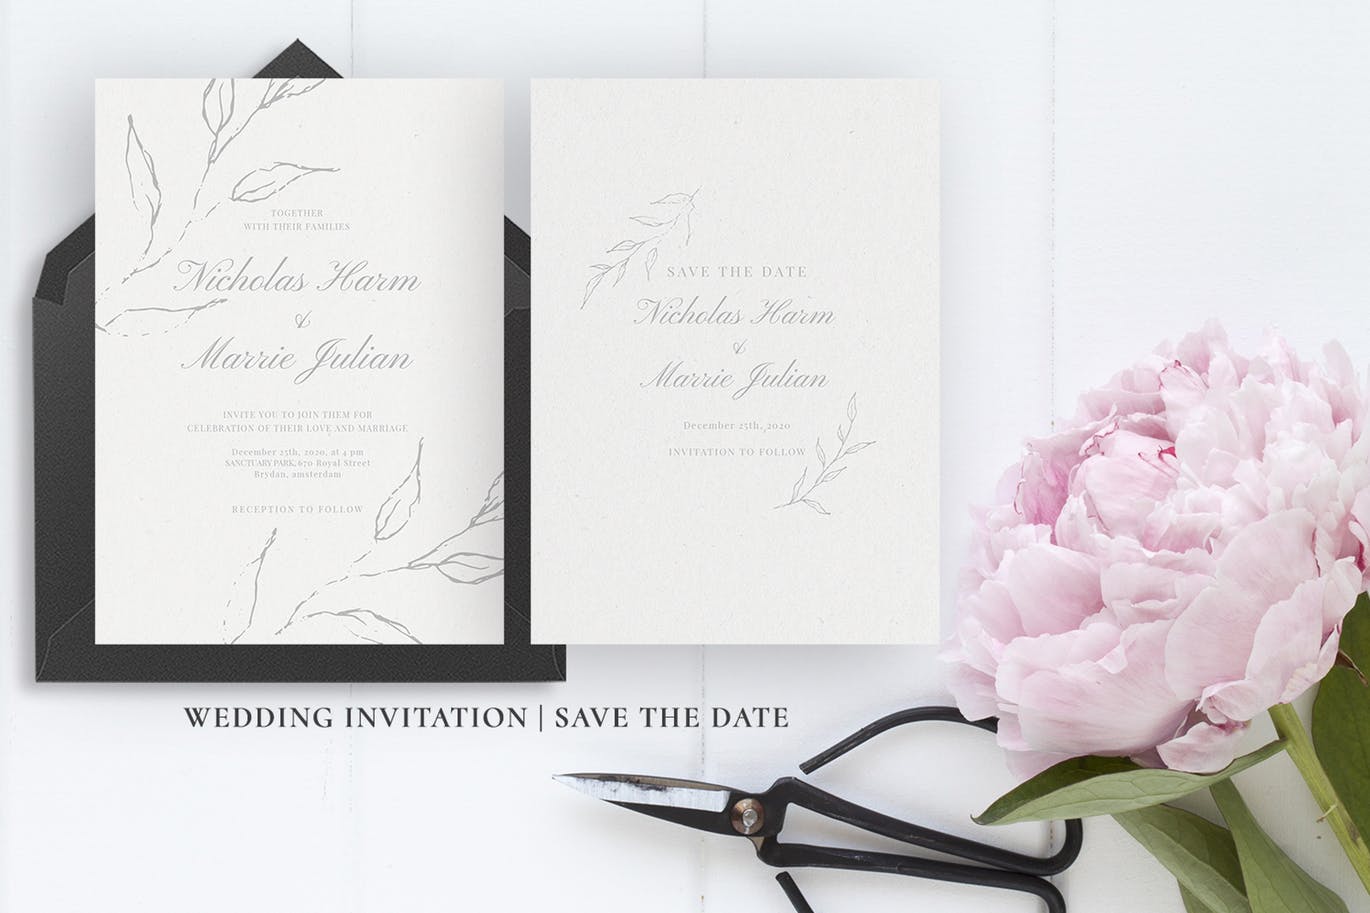 优雅手绘花卉图案婚礼主题设计素材包 Elegant Floral Wedding Suite插图(4)